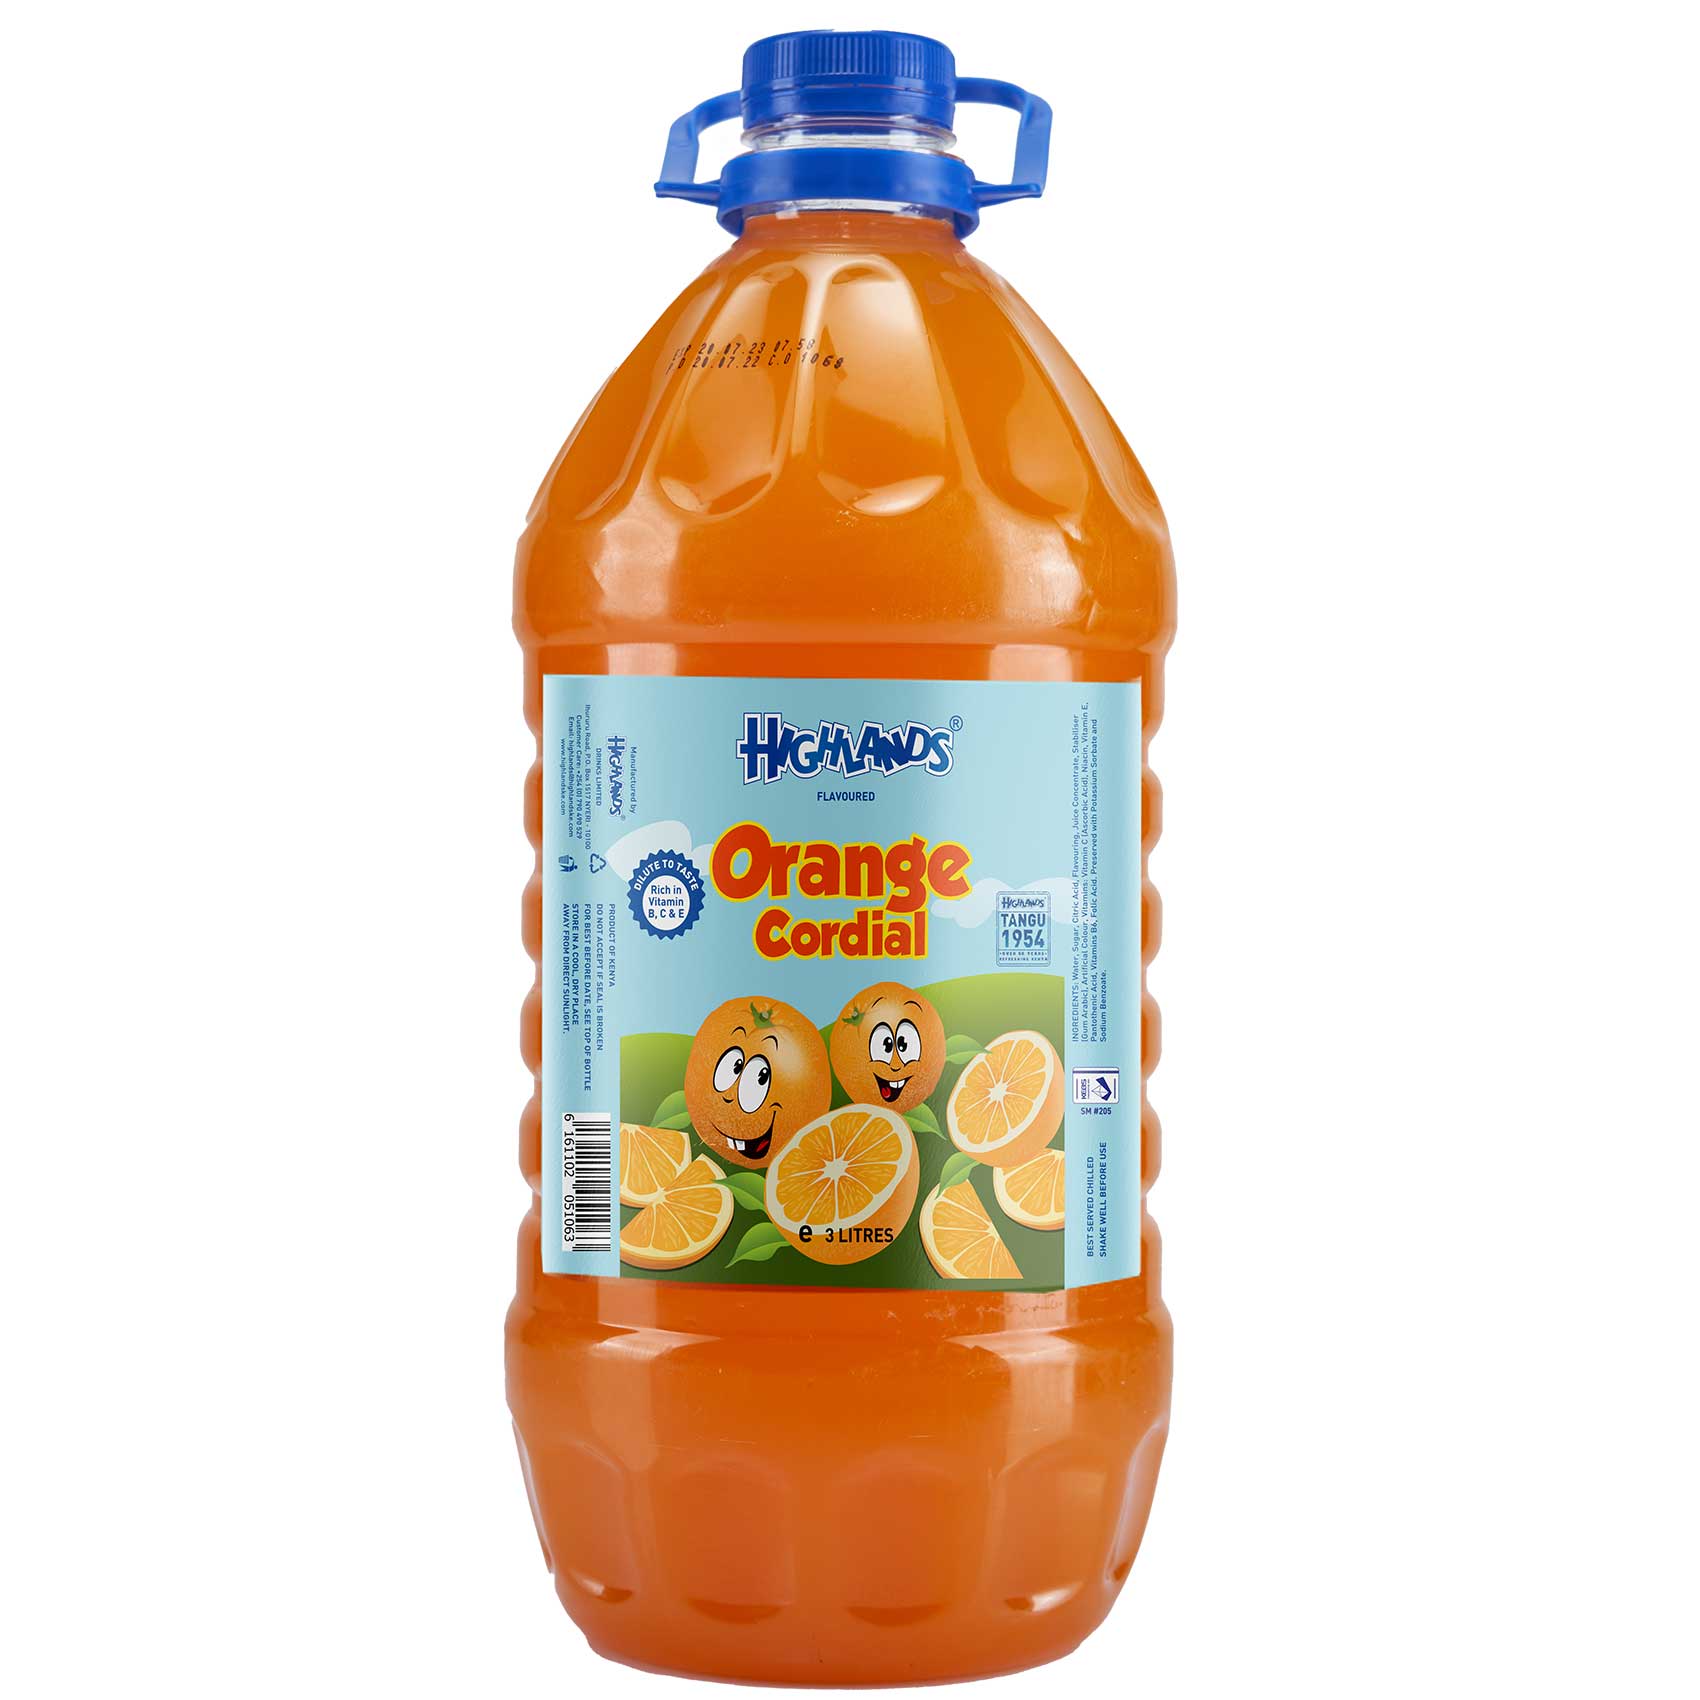 Highlands Cordial Orange Juice 3L